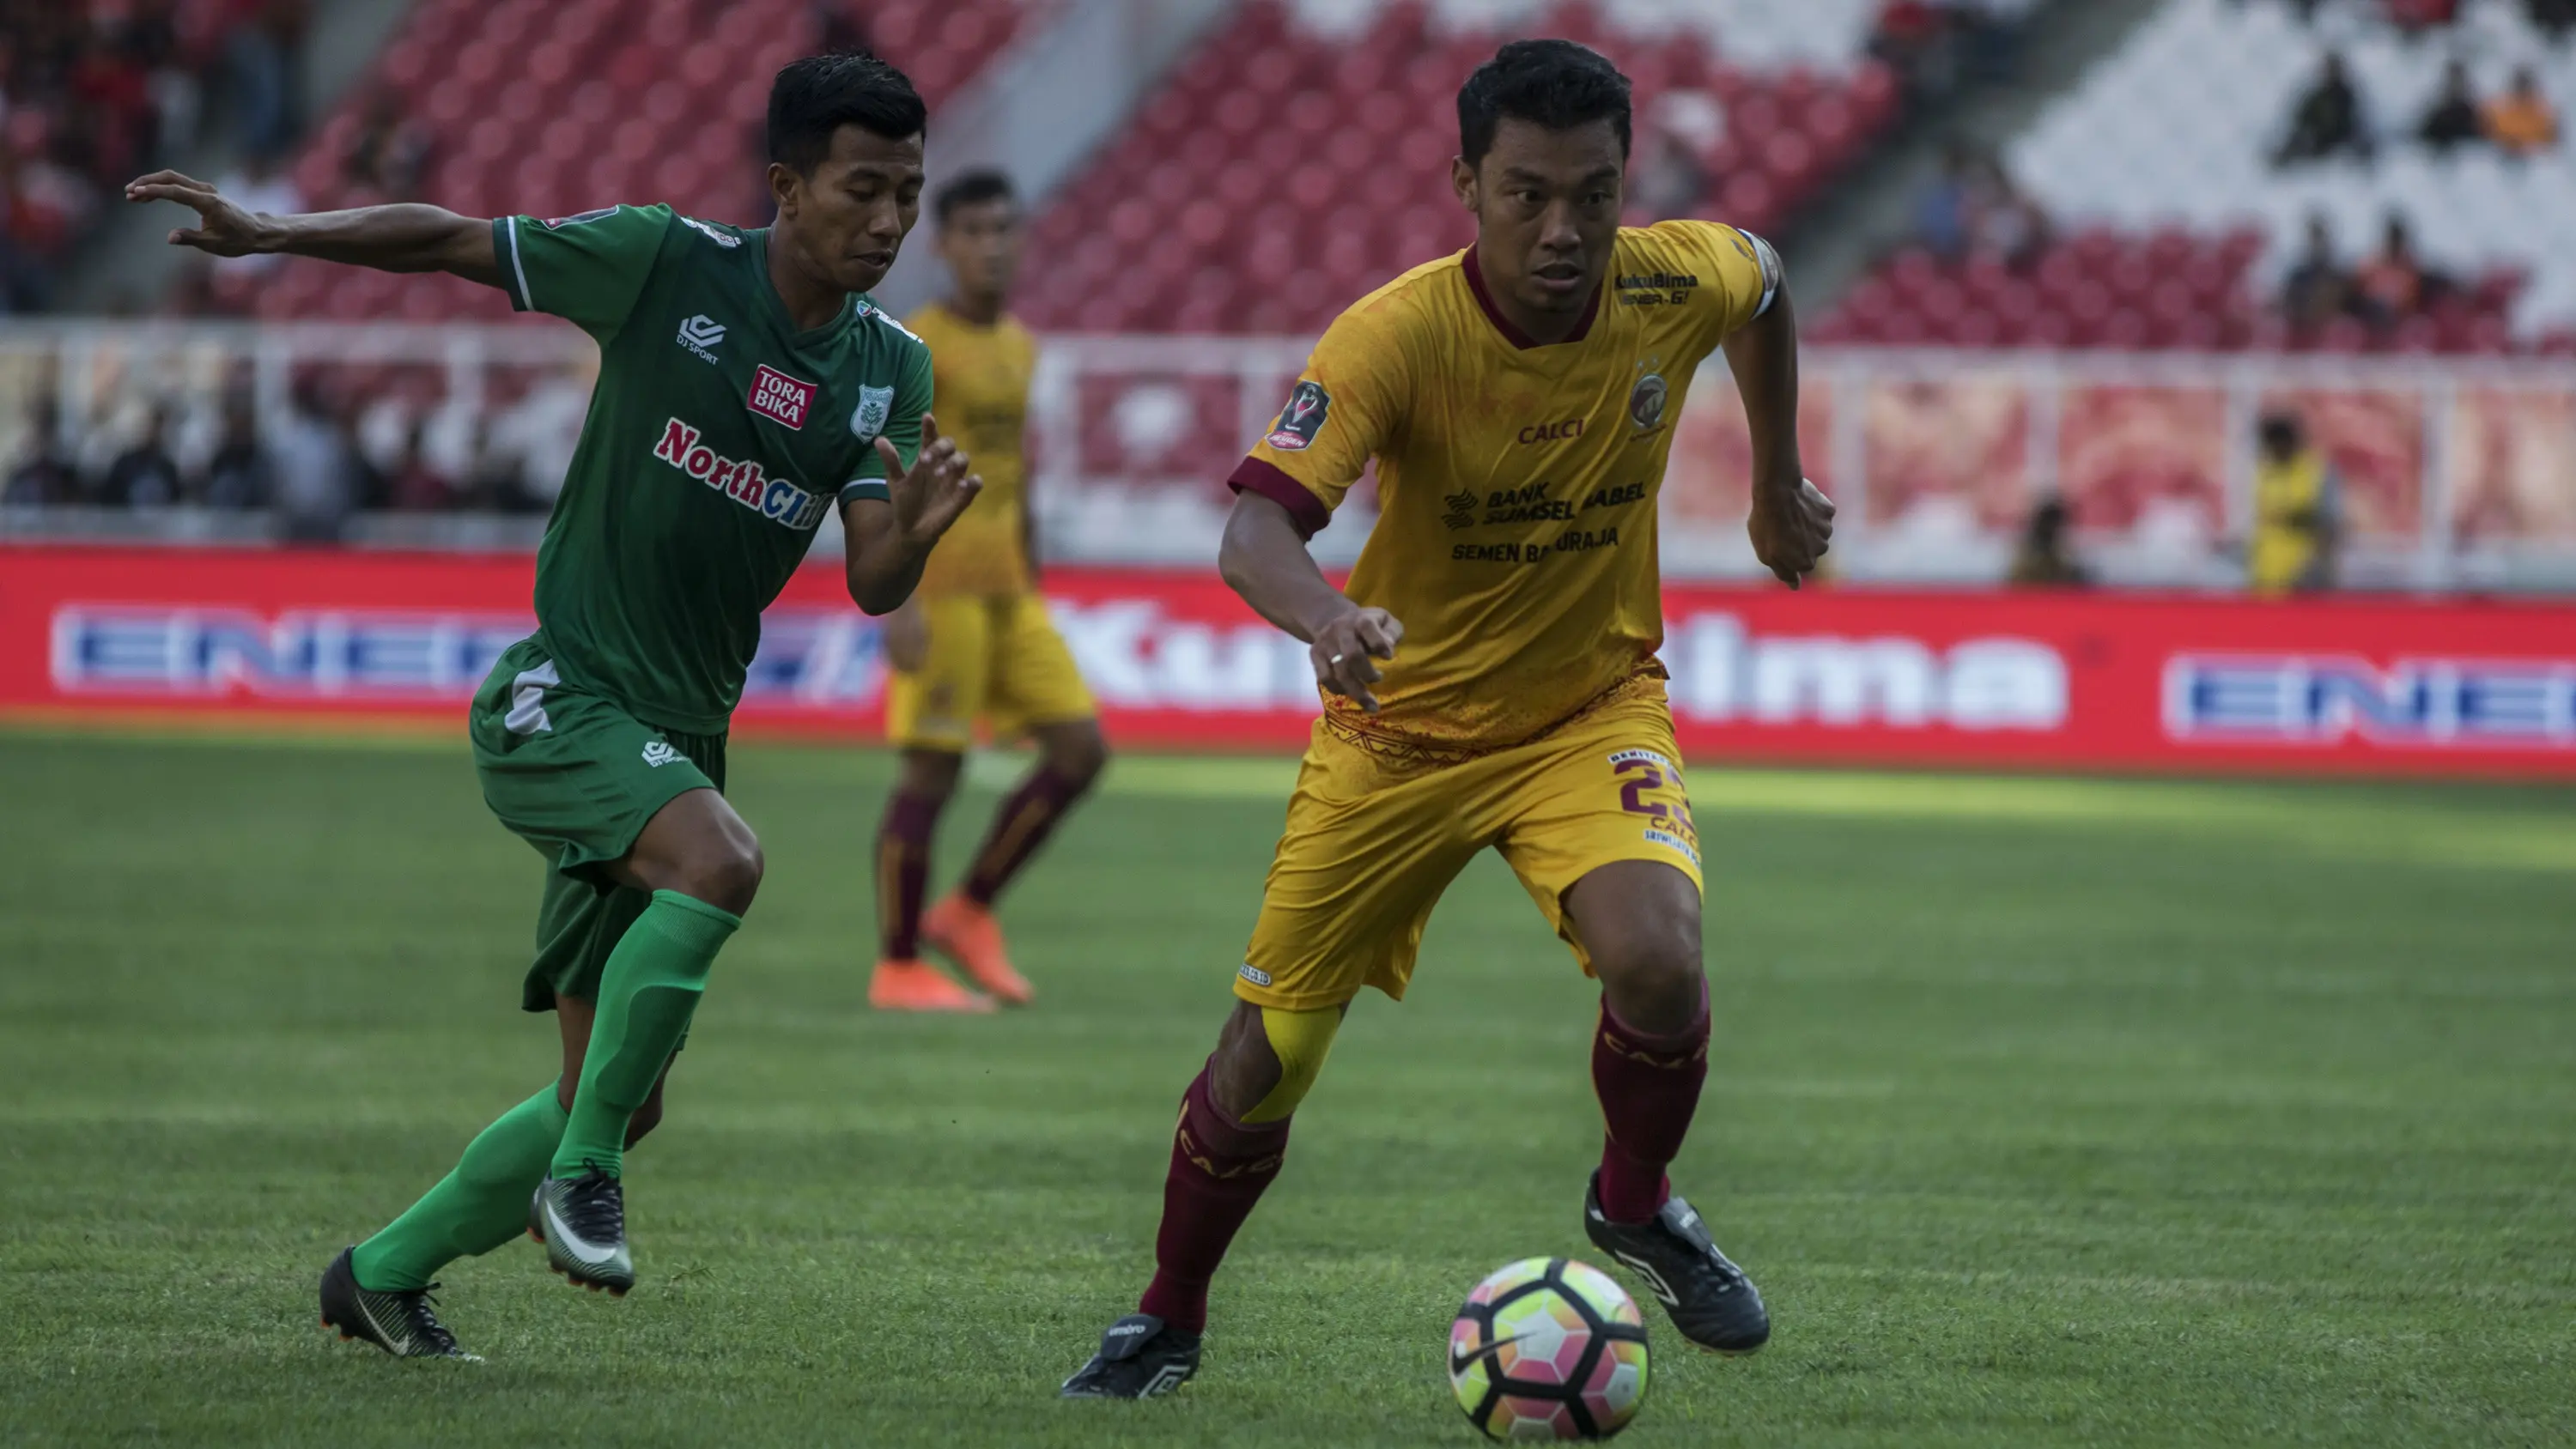 Bek Sriwijaya FC, Hamka Hamzah, menggiring bola saat melawan PSMS Medan pada perebutan tempat ketiga Piala Presiden di SUGBK, Jakarta, Sabtu (17/2/2018). PSMS kalah 0-4 dari Sriwijaya FC. (Bola.com/Vitalis Yogi Trisna)